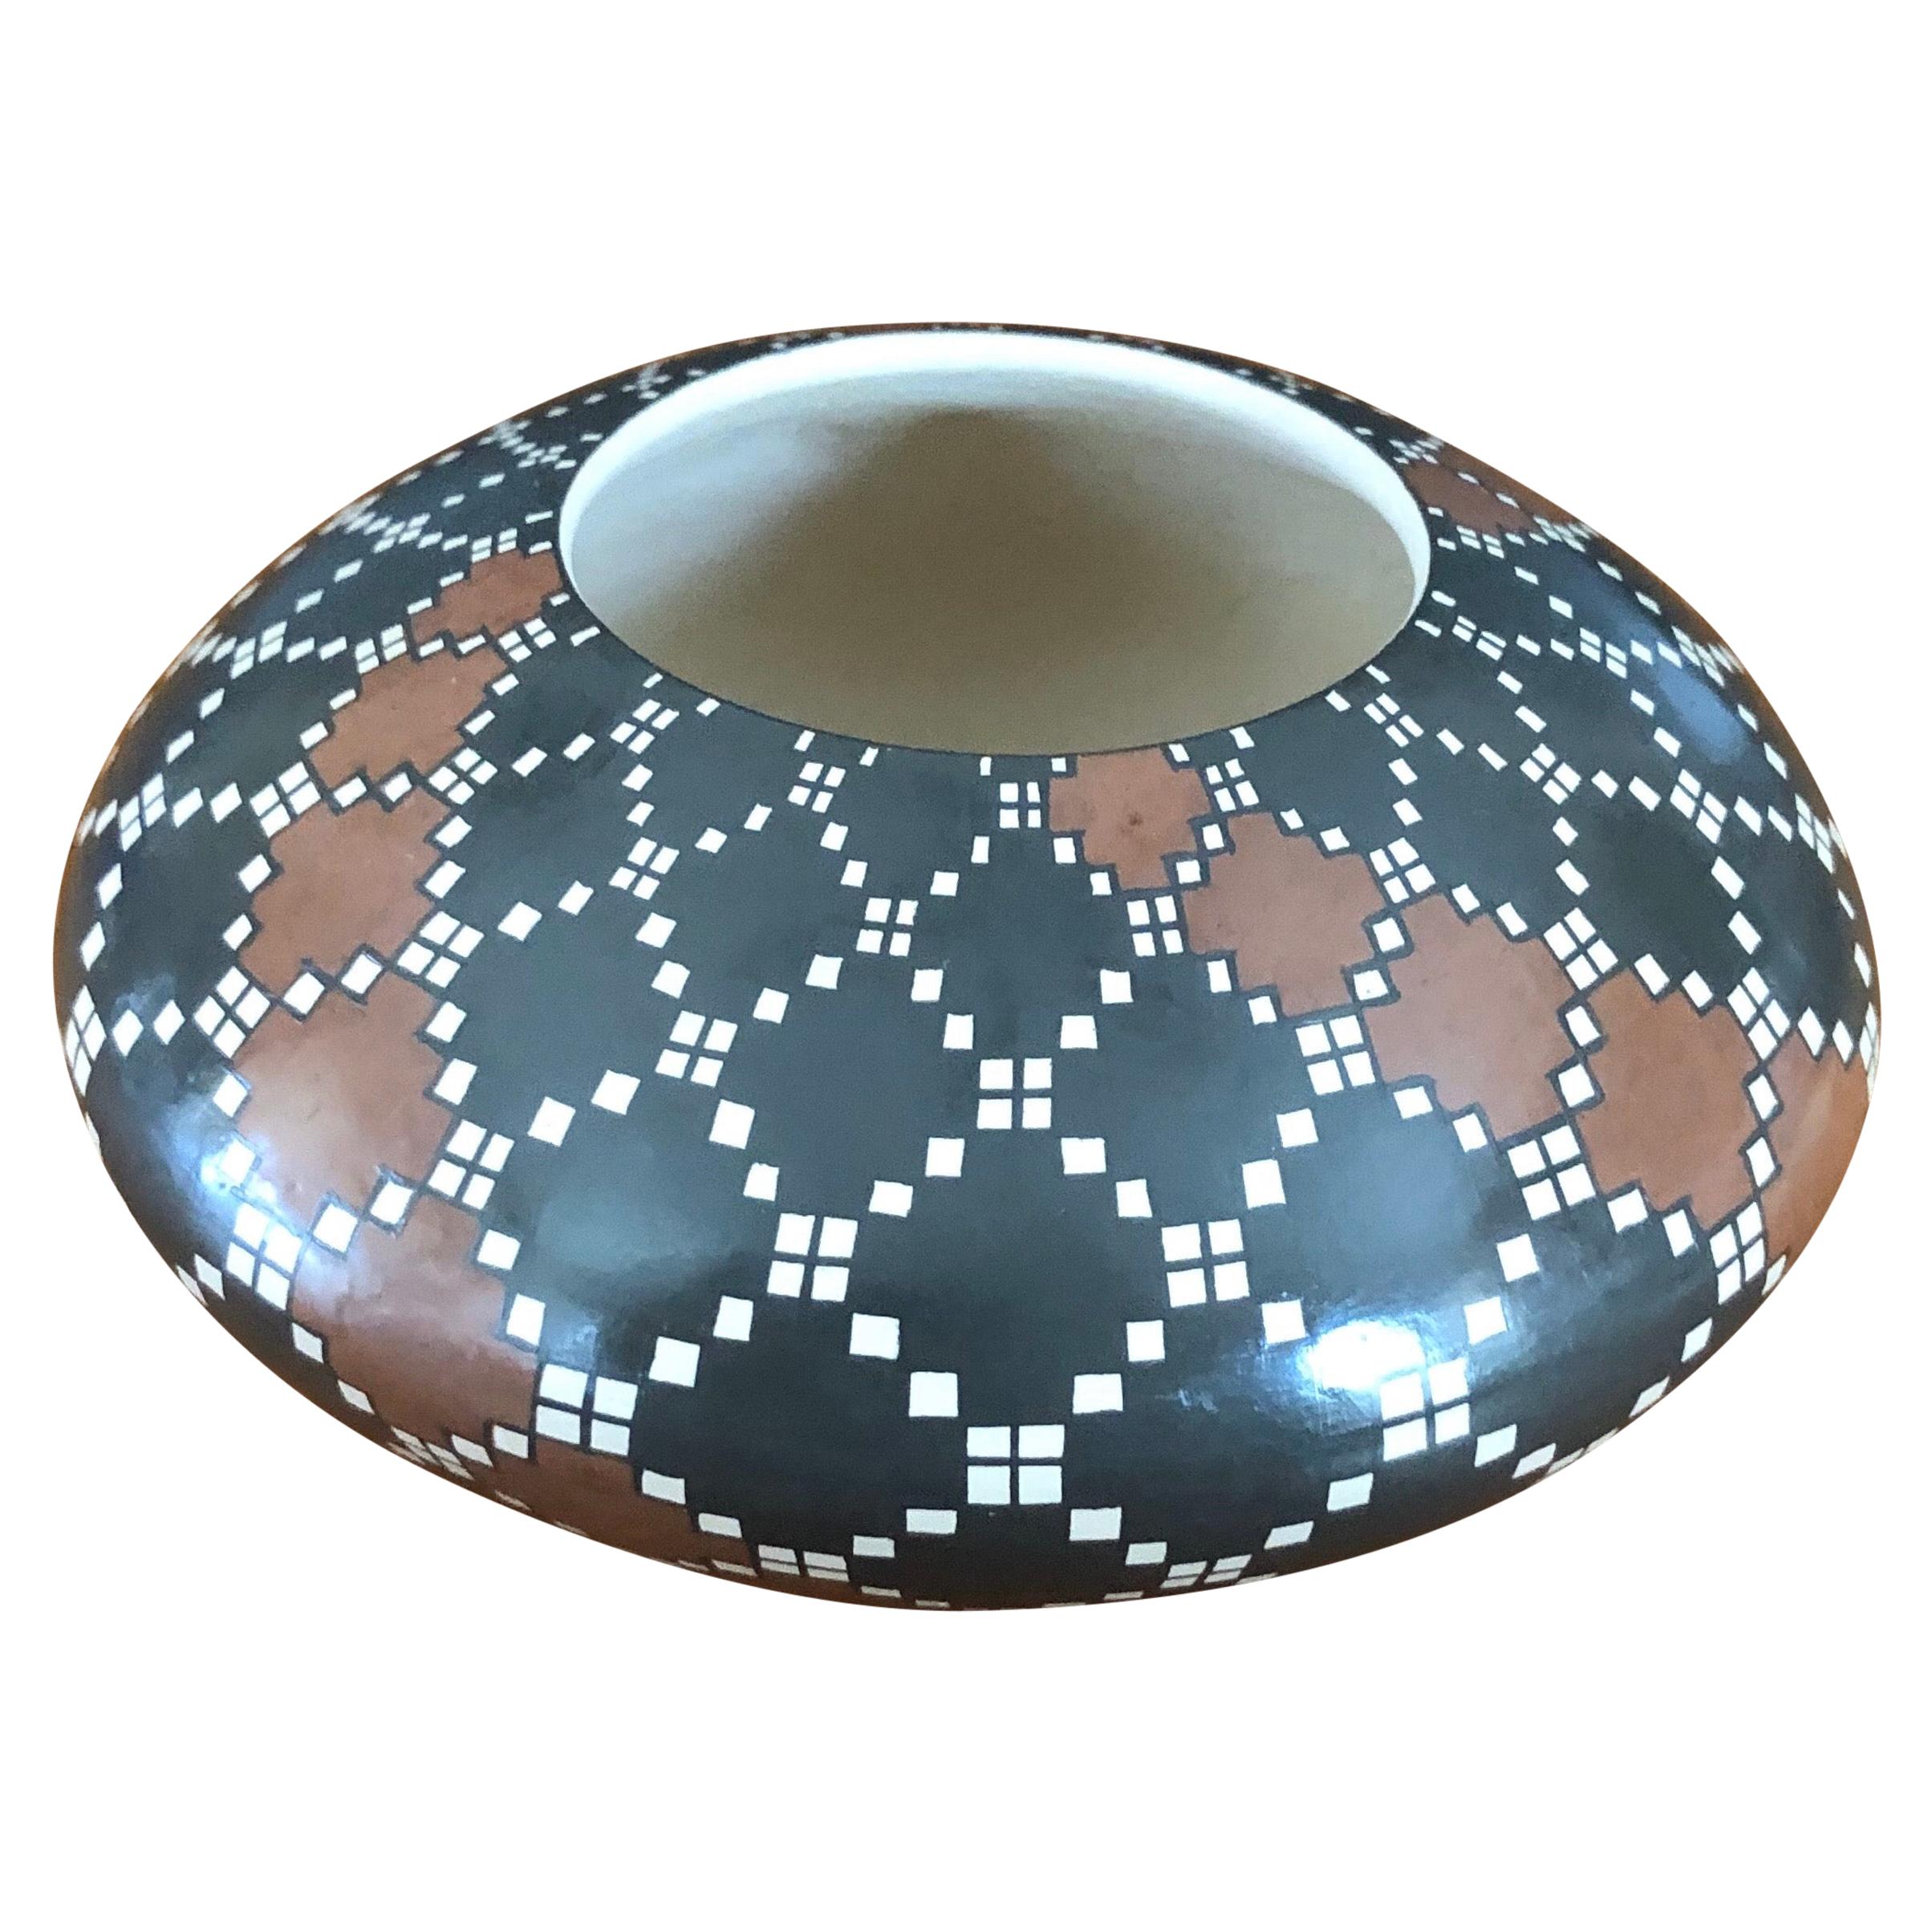 Vase en poterie géométrique Mata Ortiz de Juana Ledezma Vecoz